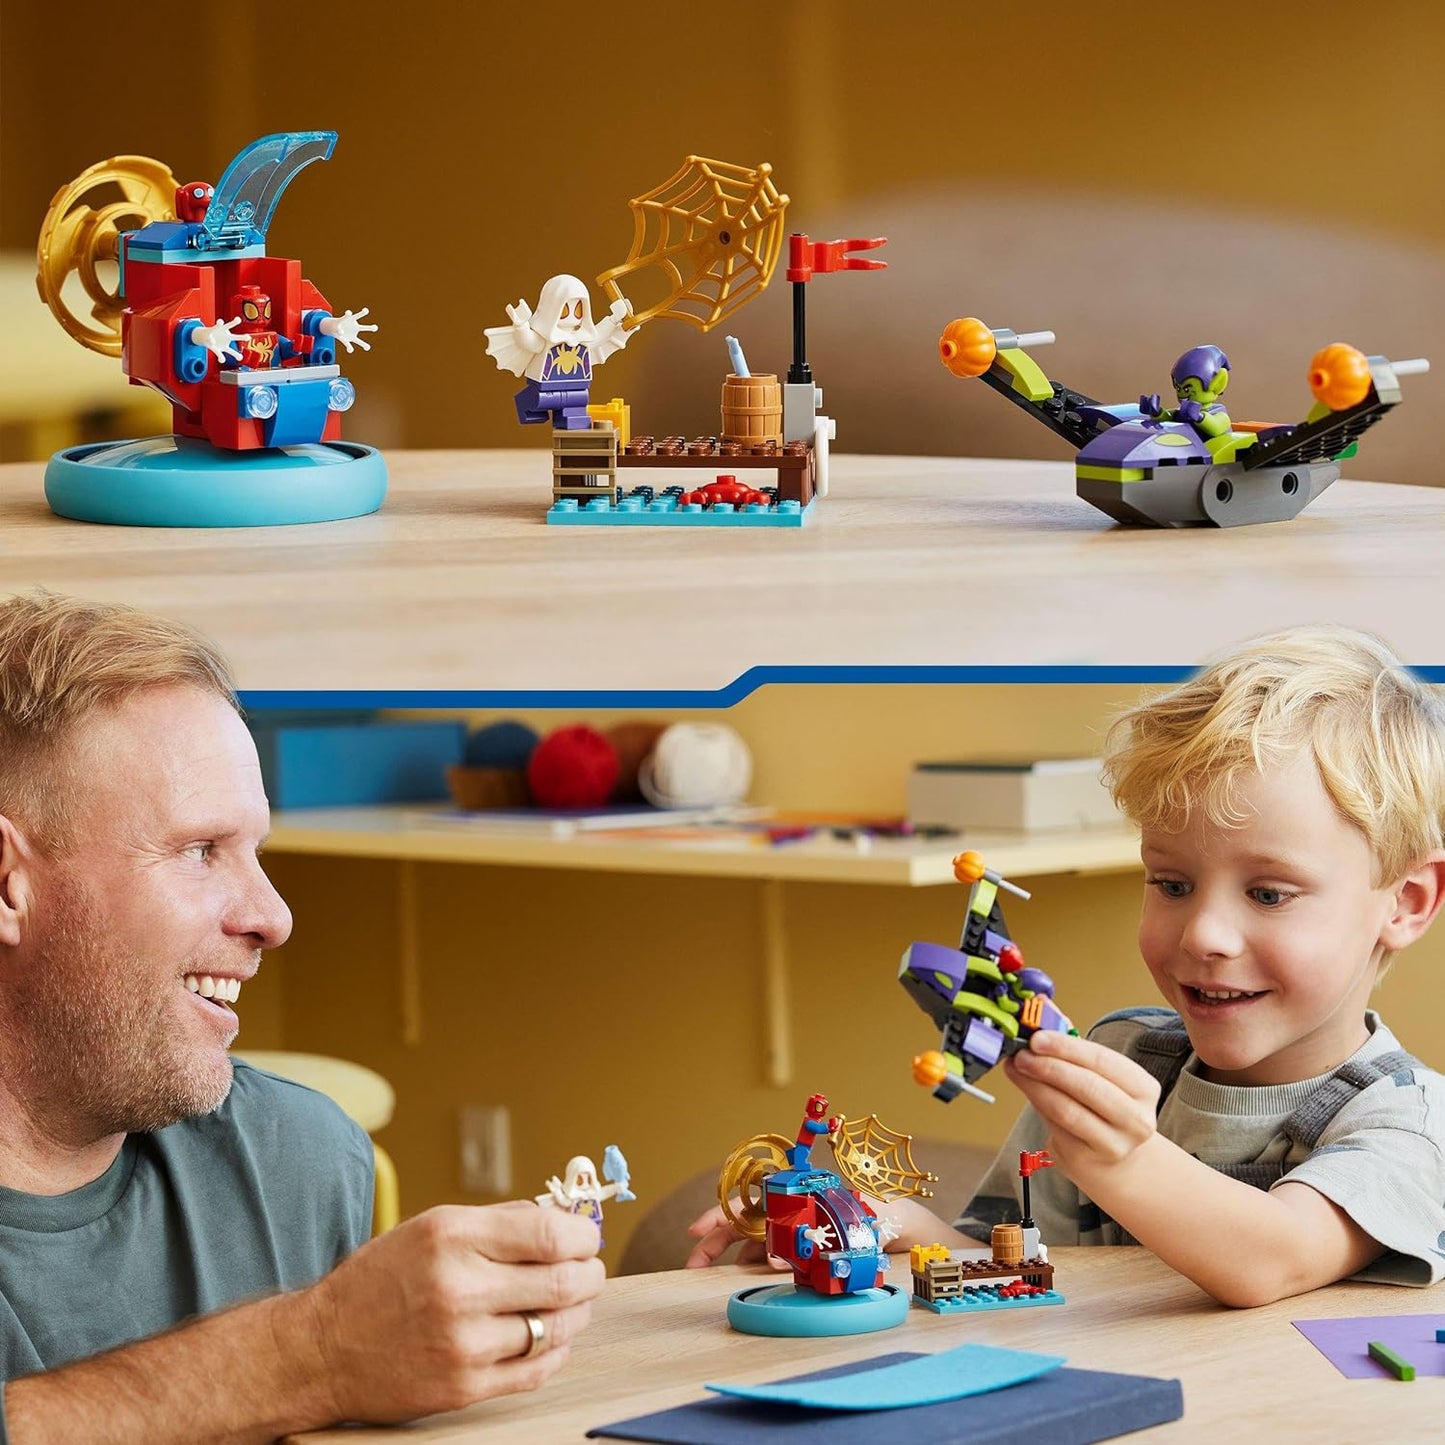 LEGO Marvel Spidey e seus incríveis amigos Spidey vs. Green Goblin Super Hero Building Toy com minifiguras, presente para crianças, meninos, meninas e fãs de 4 anos ou mais do Homem-Aranha e veículos legais 10793